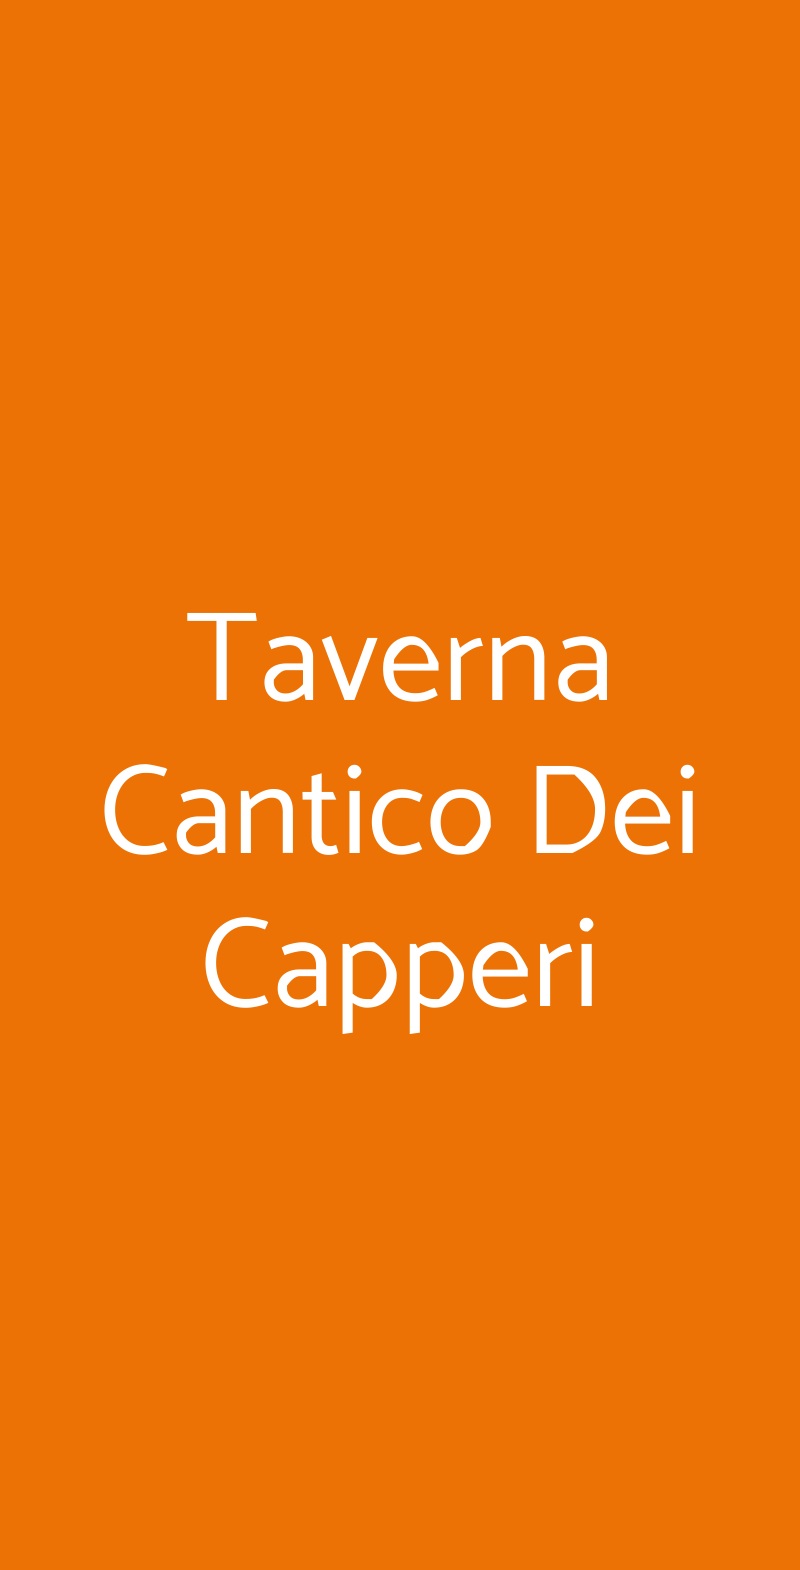 Taverna Cantico Dei Capperi Fubine menù 1 pagina